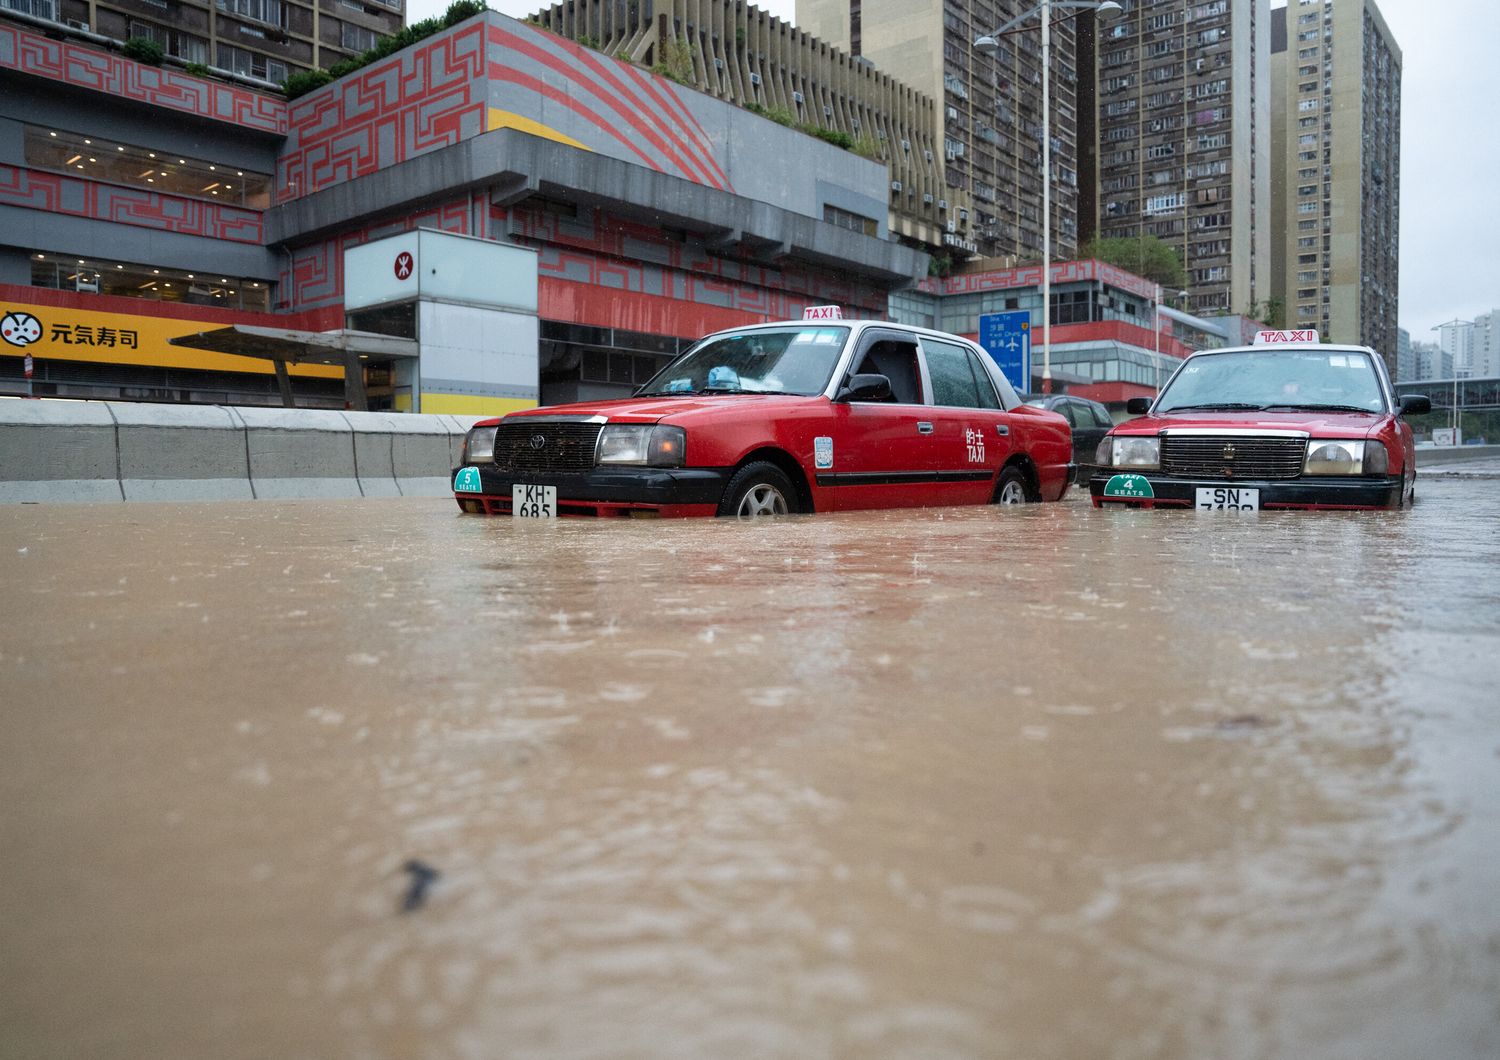 Hong Kong inondata&nbsp;